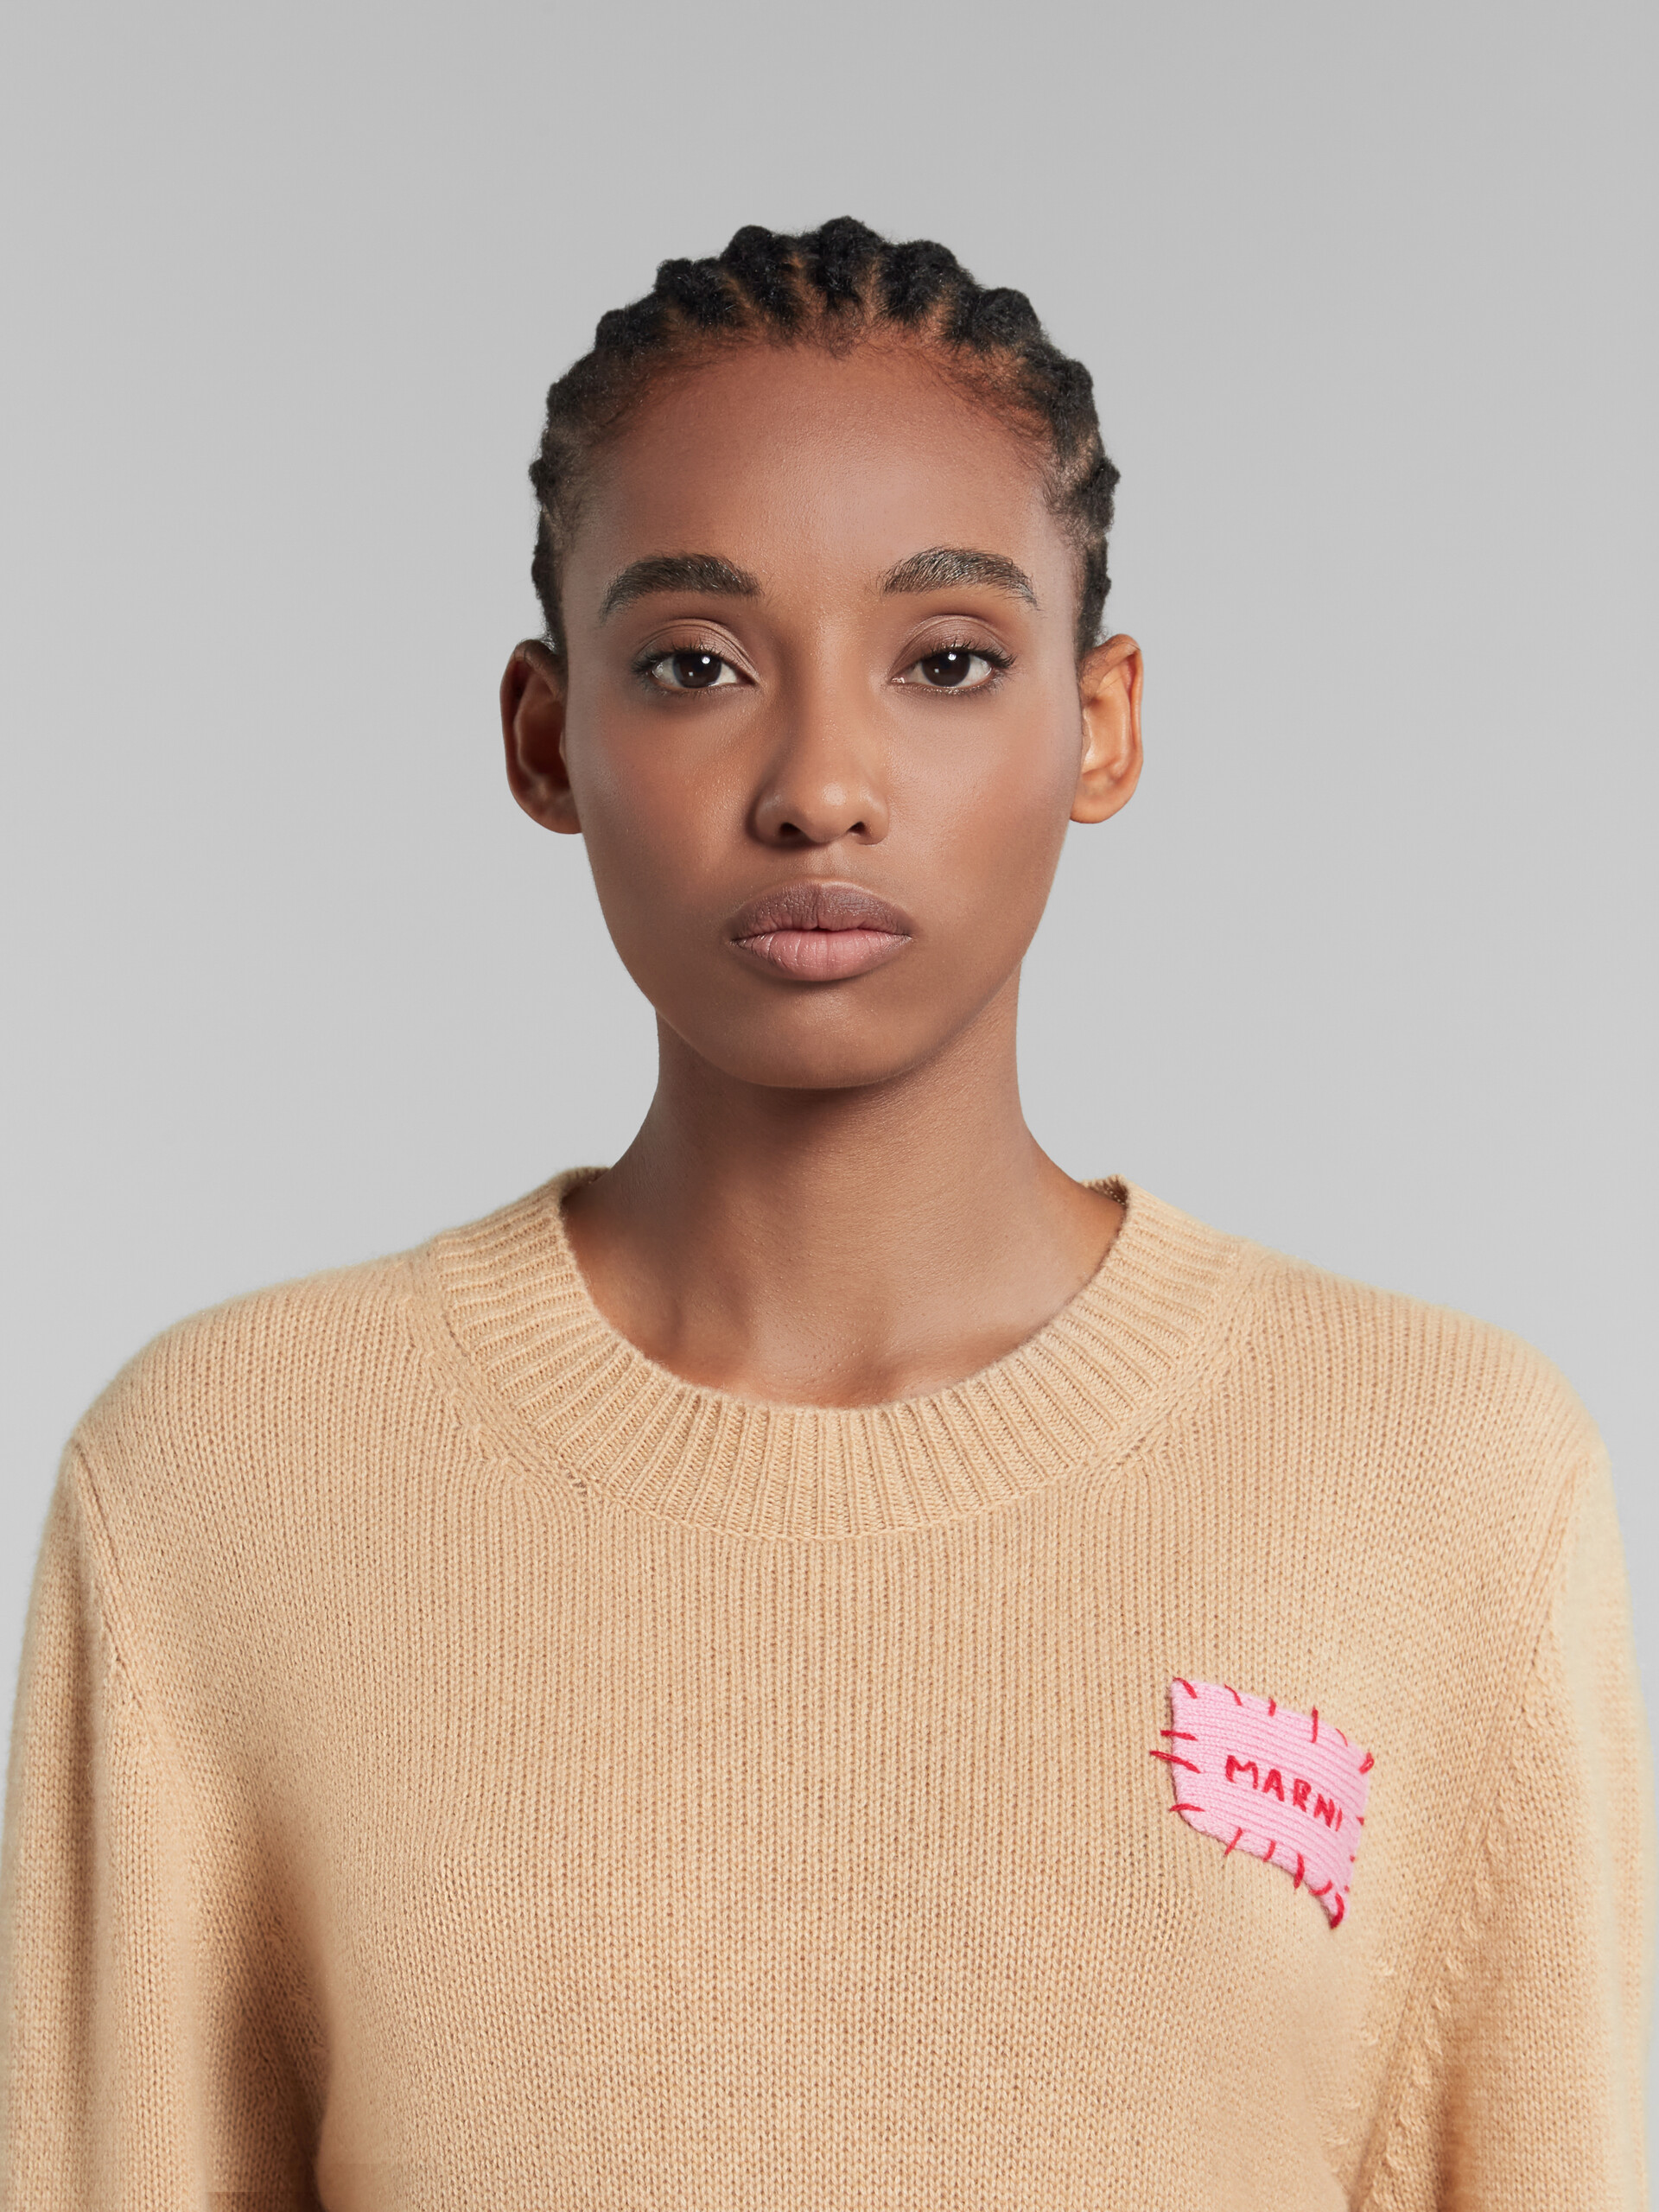 Maglione in cashmere marrone con applicazione Marni - Pullover - Image 4